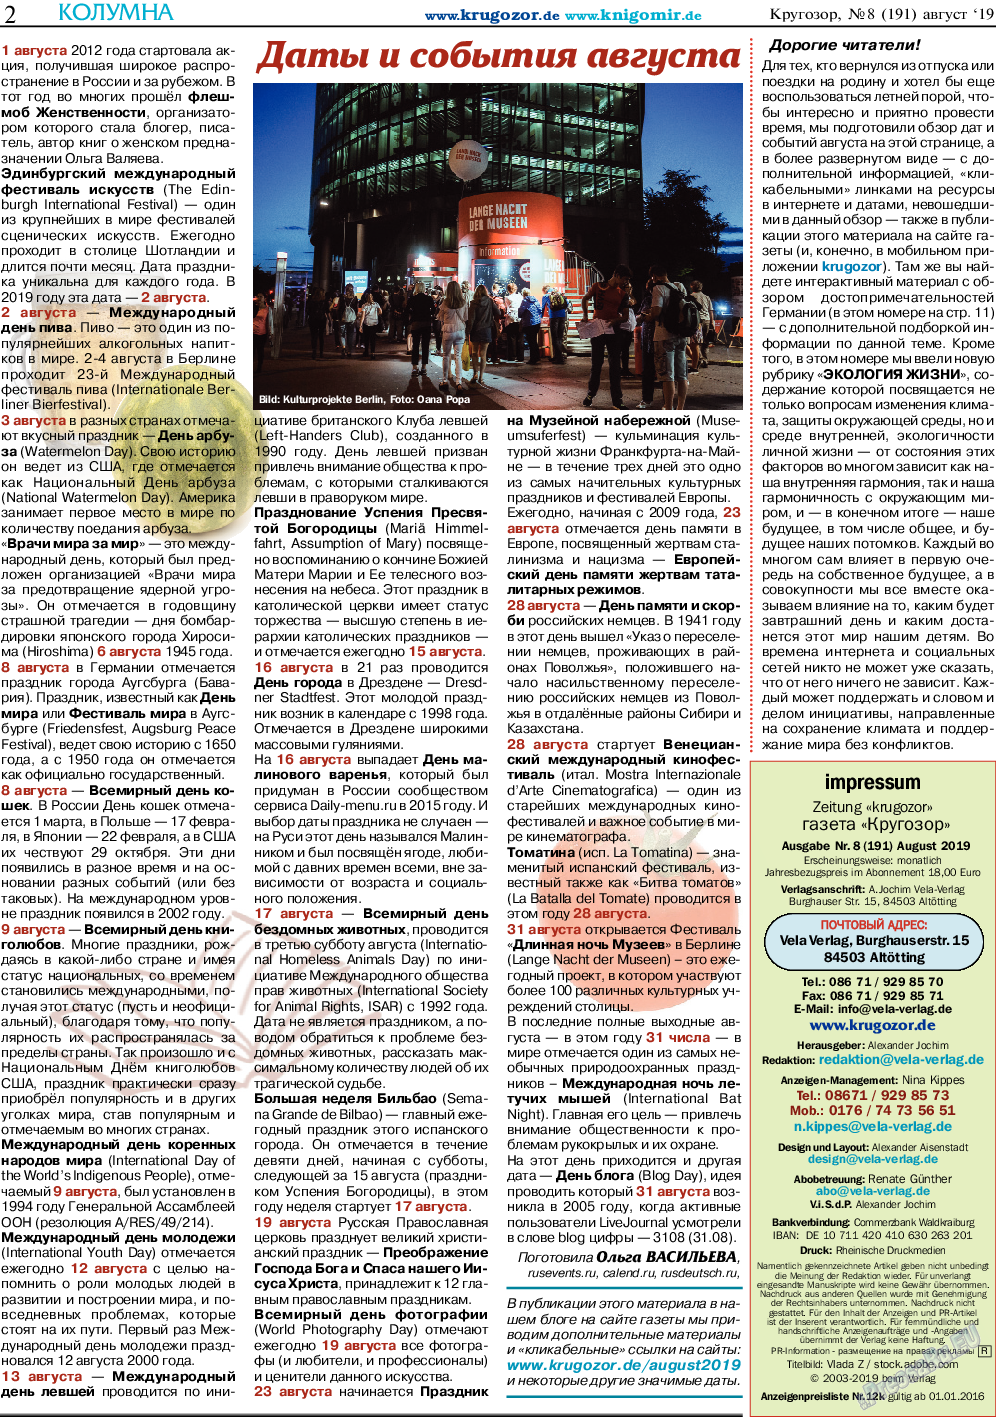 Кругозор, газета. 2019 №8 стр.2